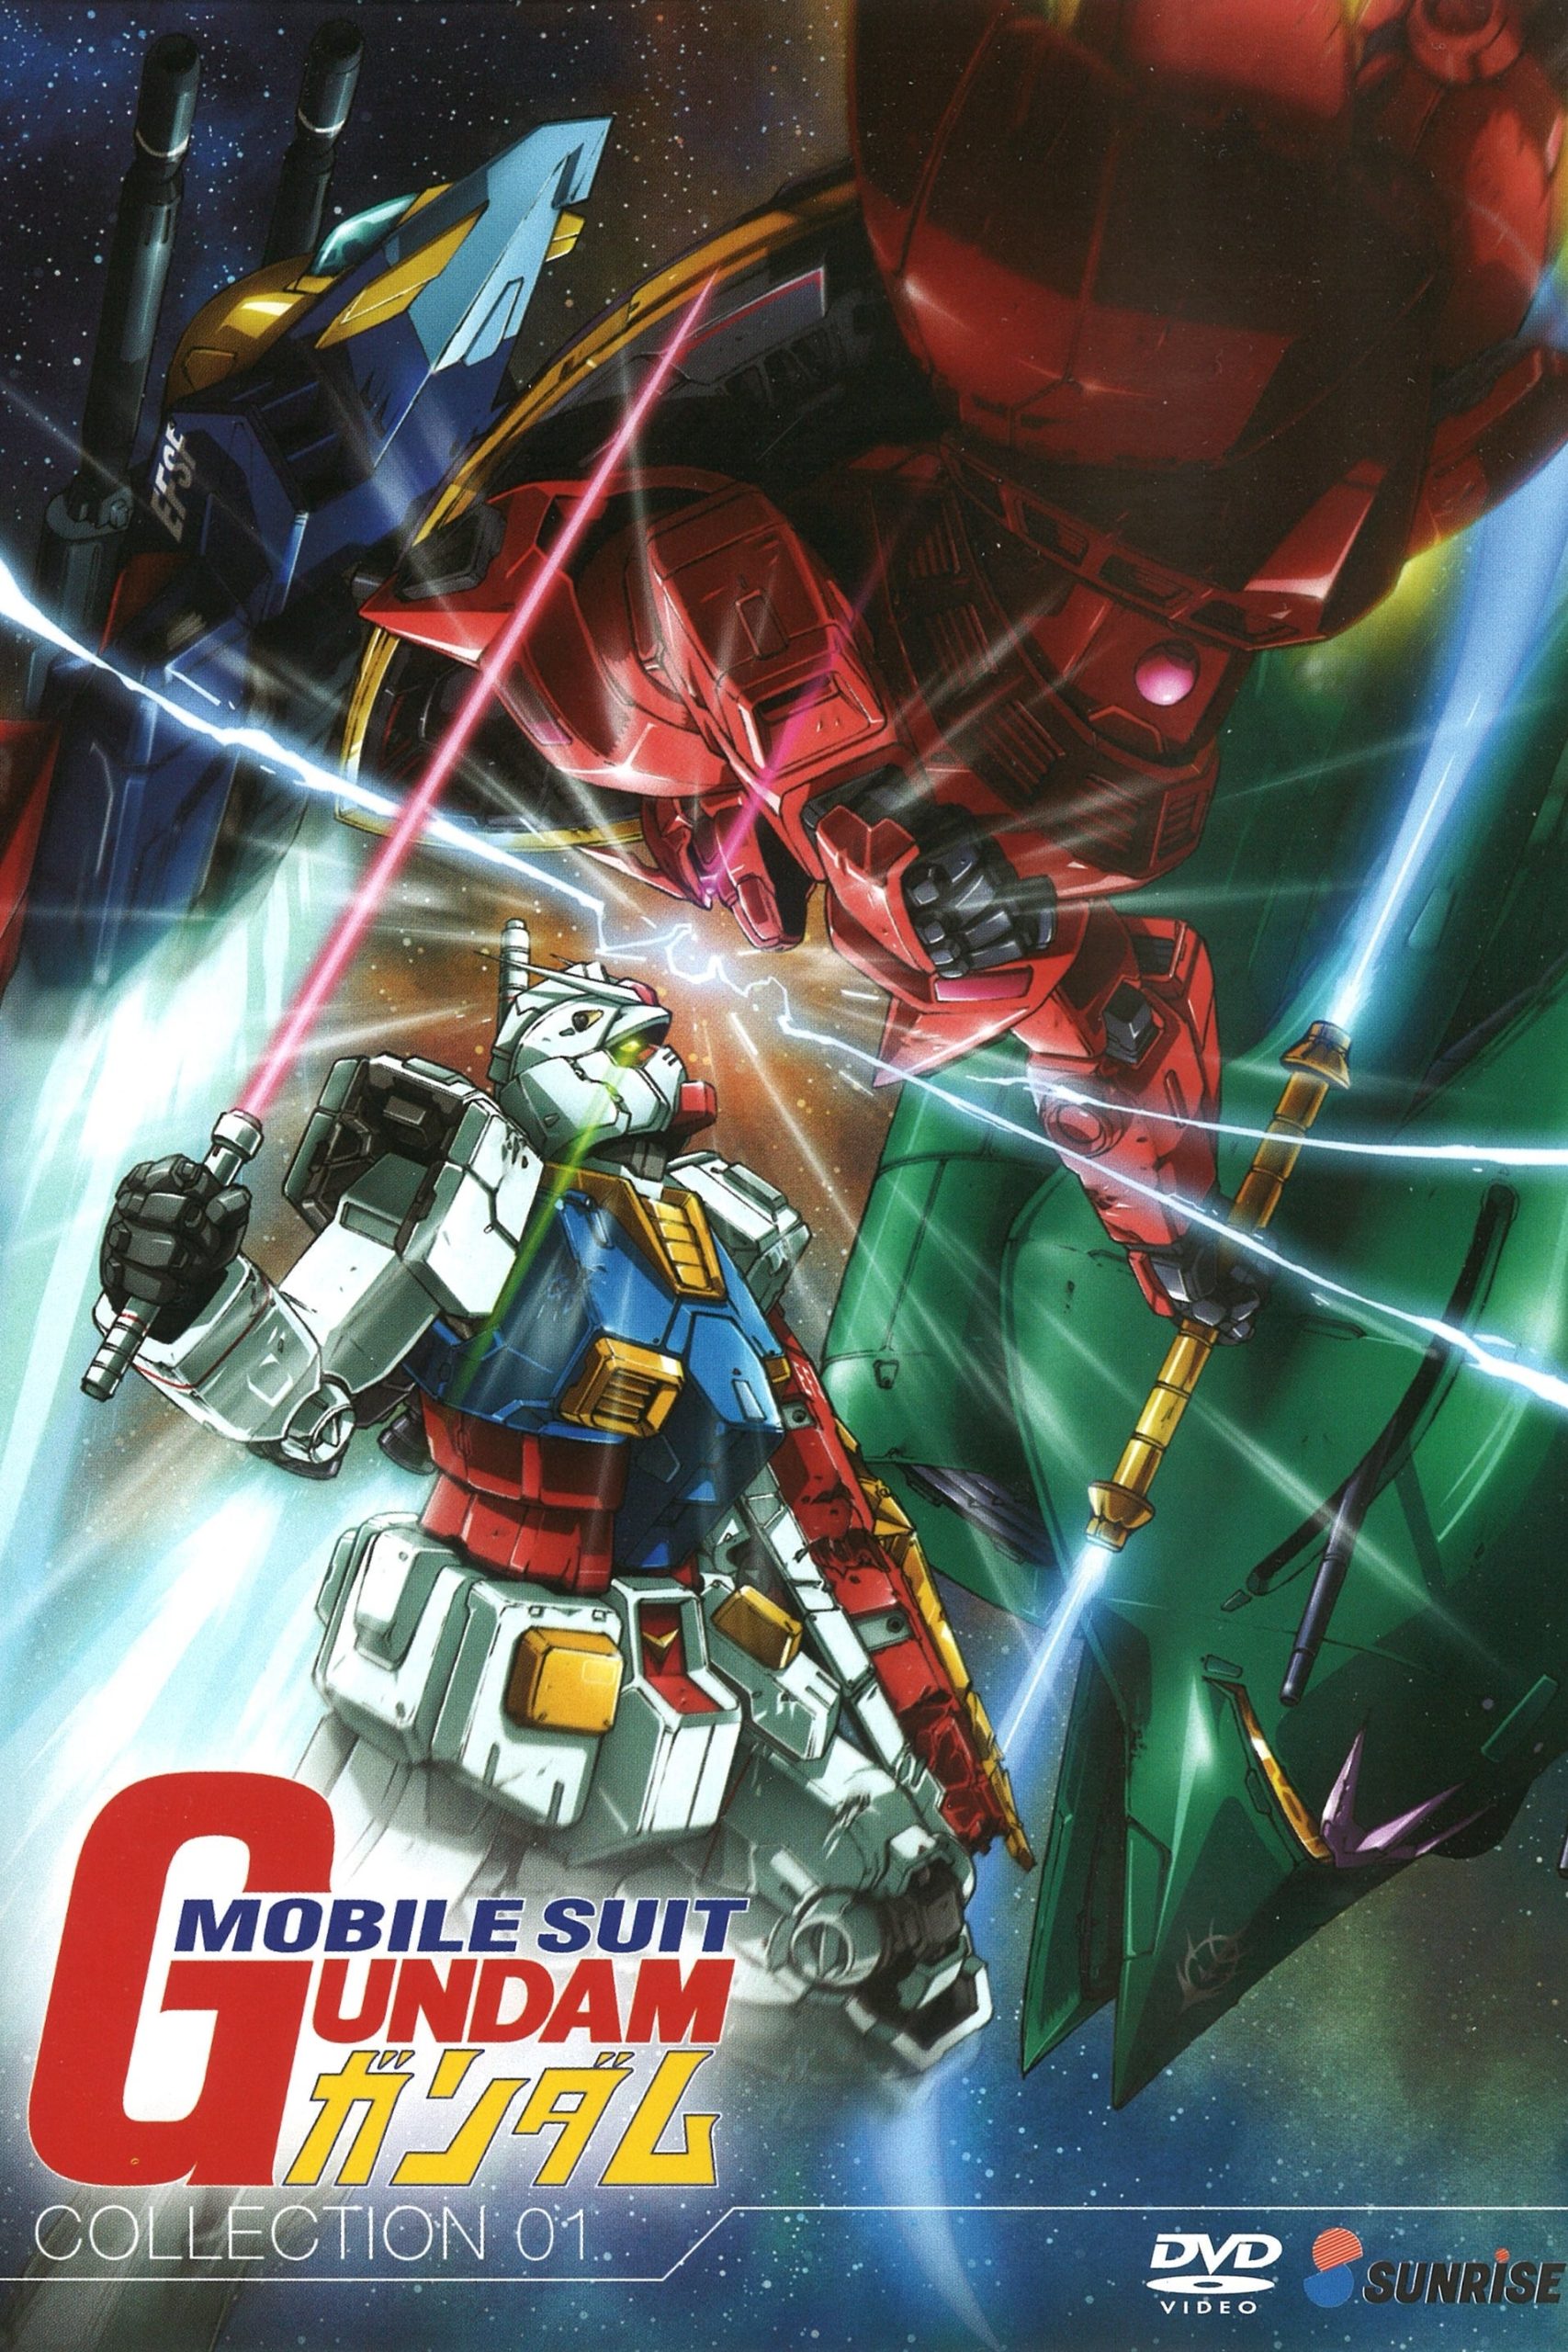 دانلود انیمیشن سریالی Mobile Suit Gundam با دوبله فارسی